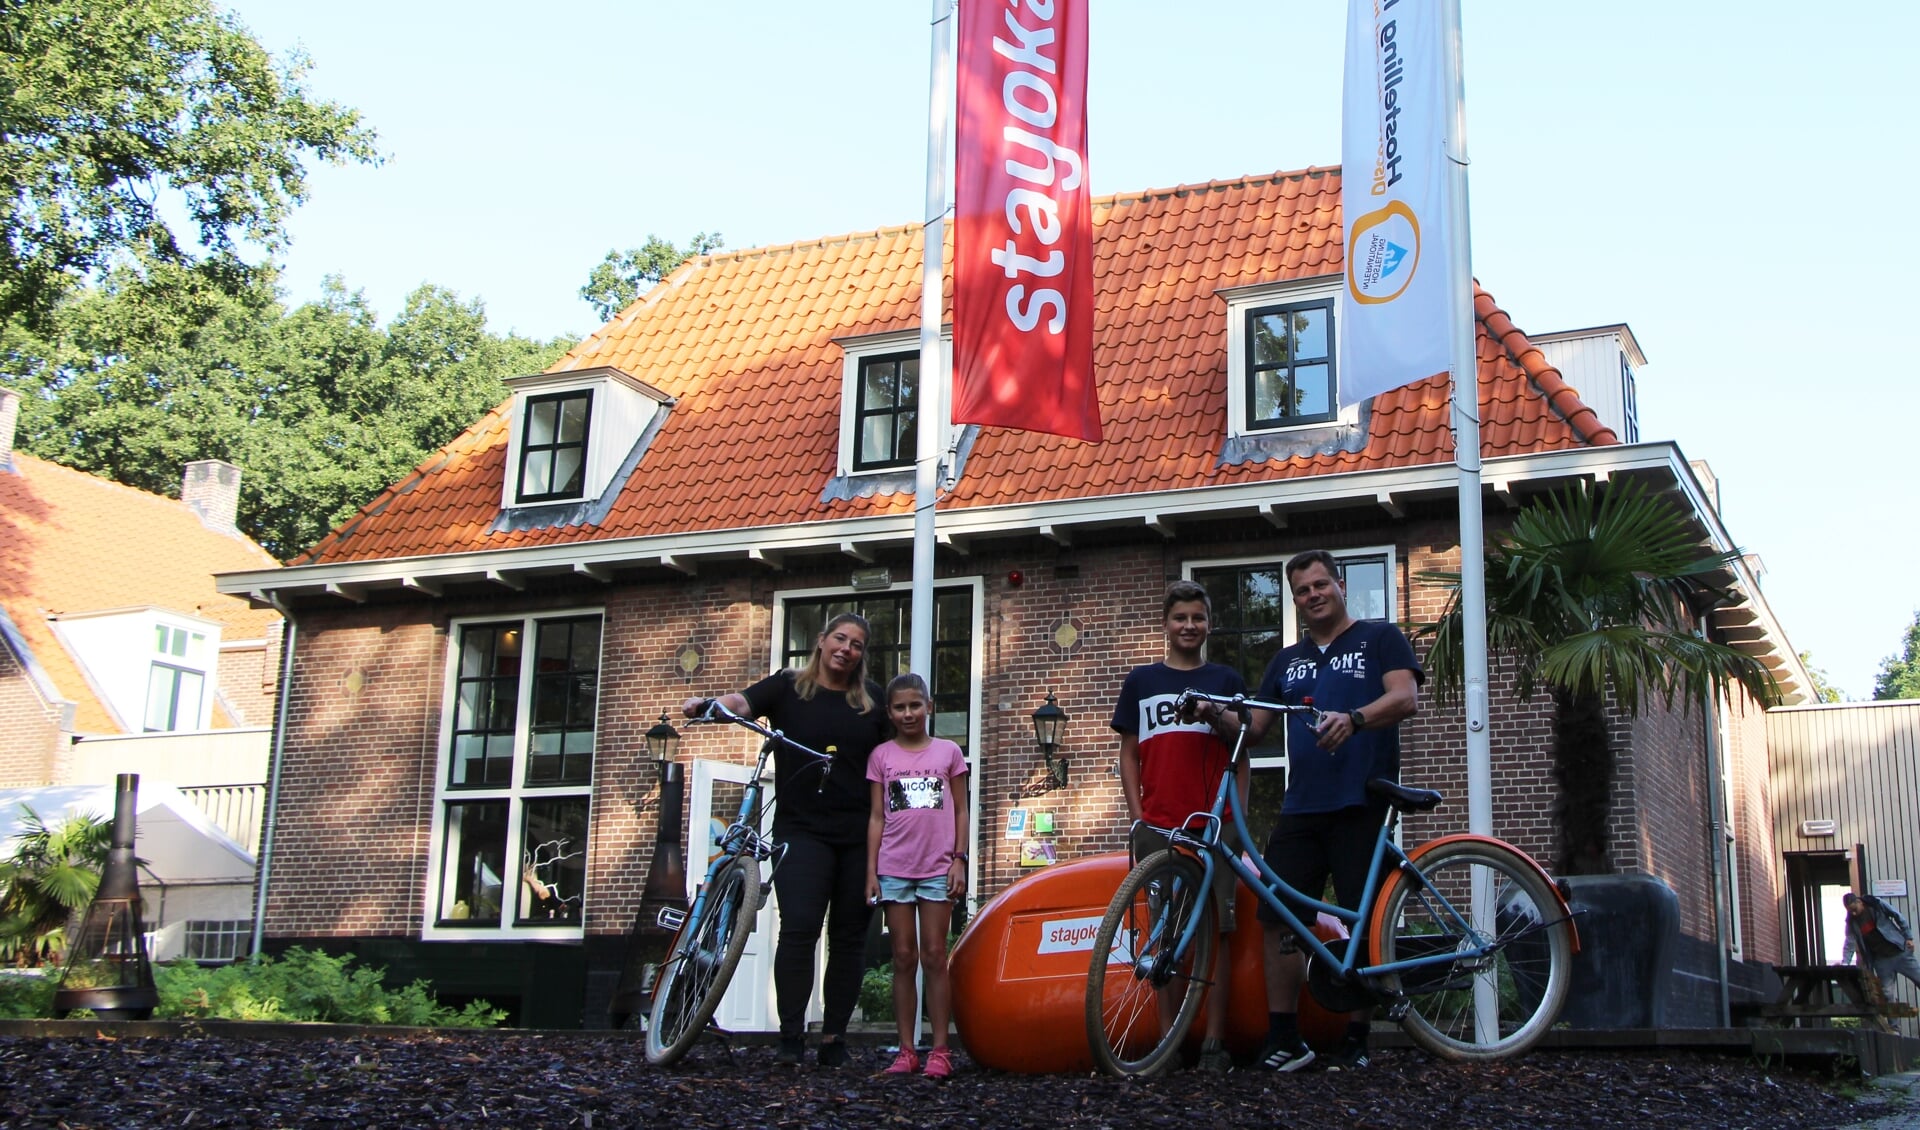 De familie Henk uit Heerlen viert zomervakantie en reist vanaf Stayokay Soest naar verschillende musea in de buurt.